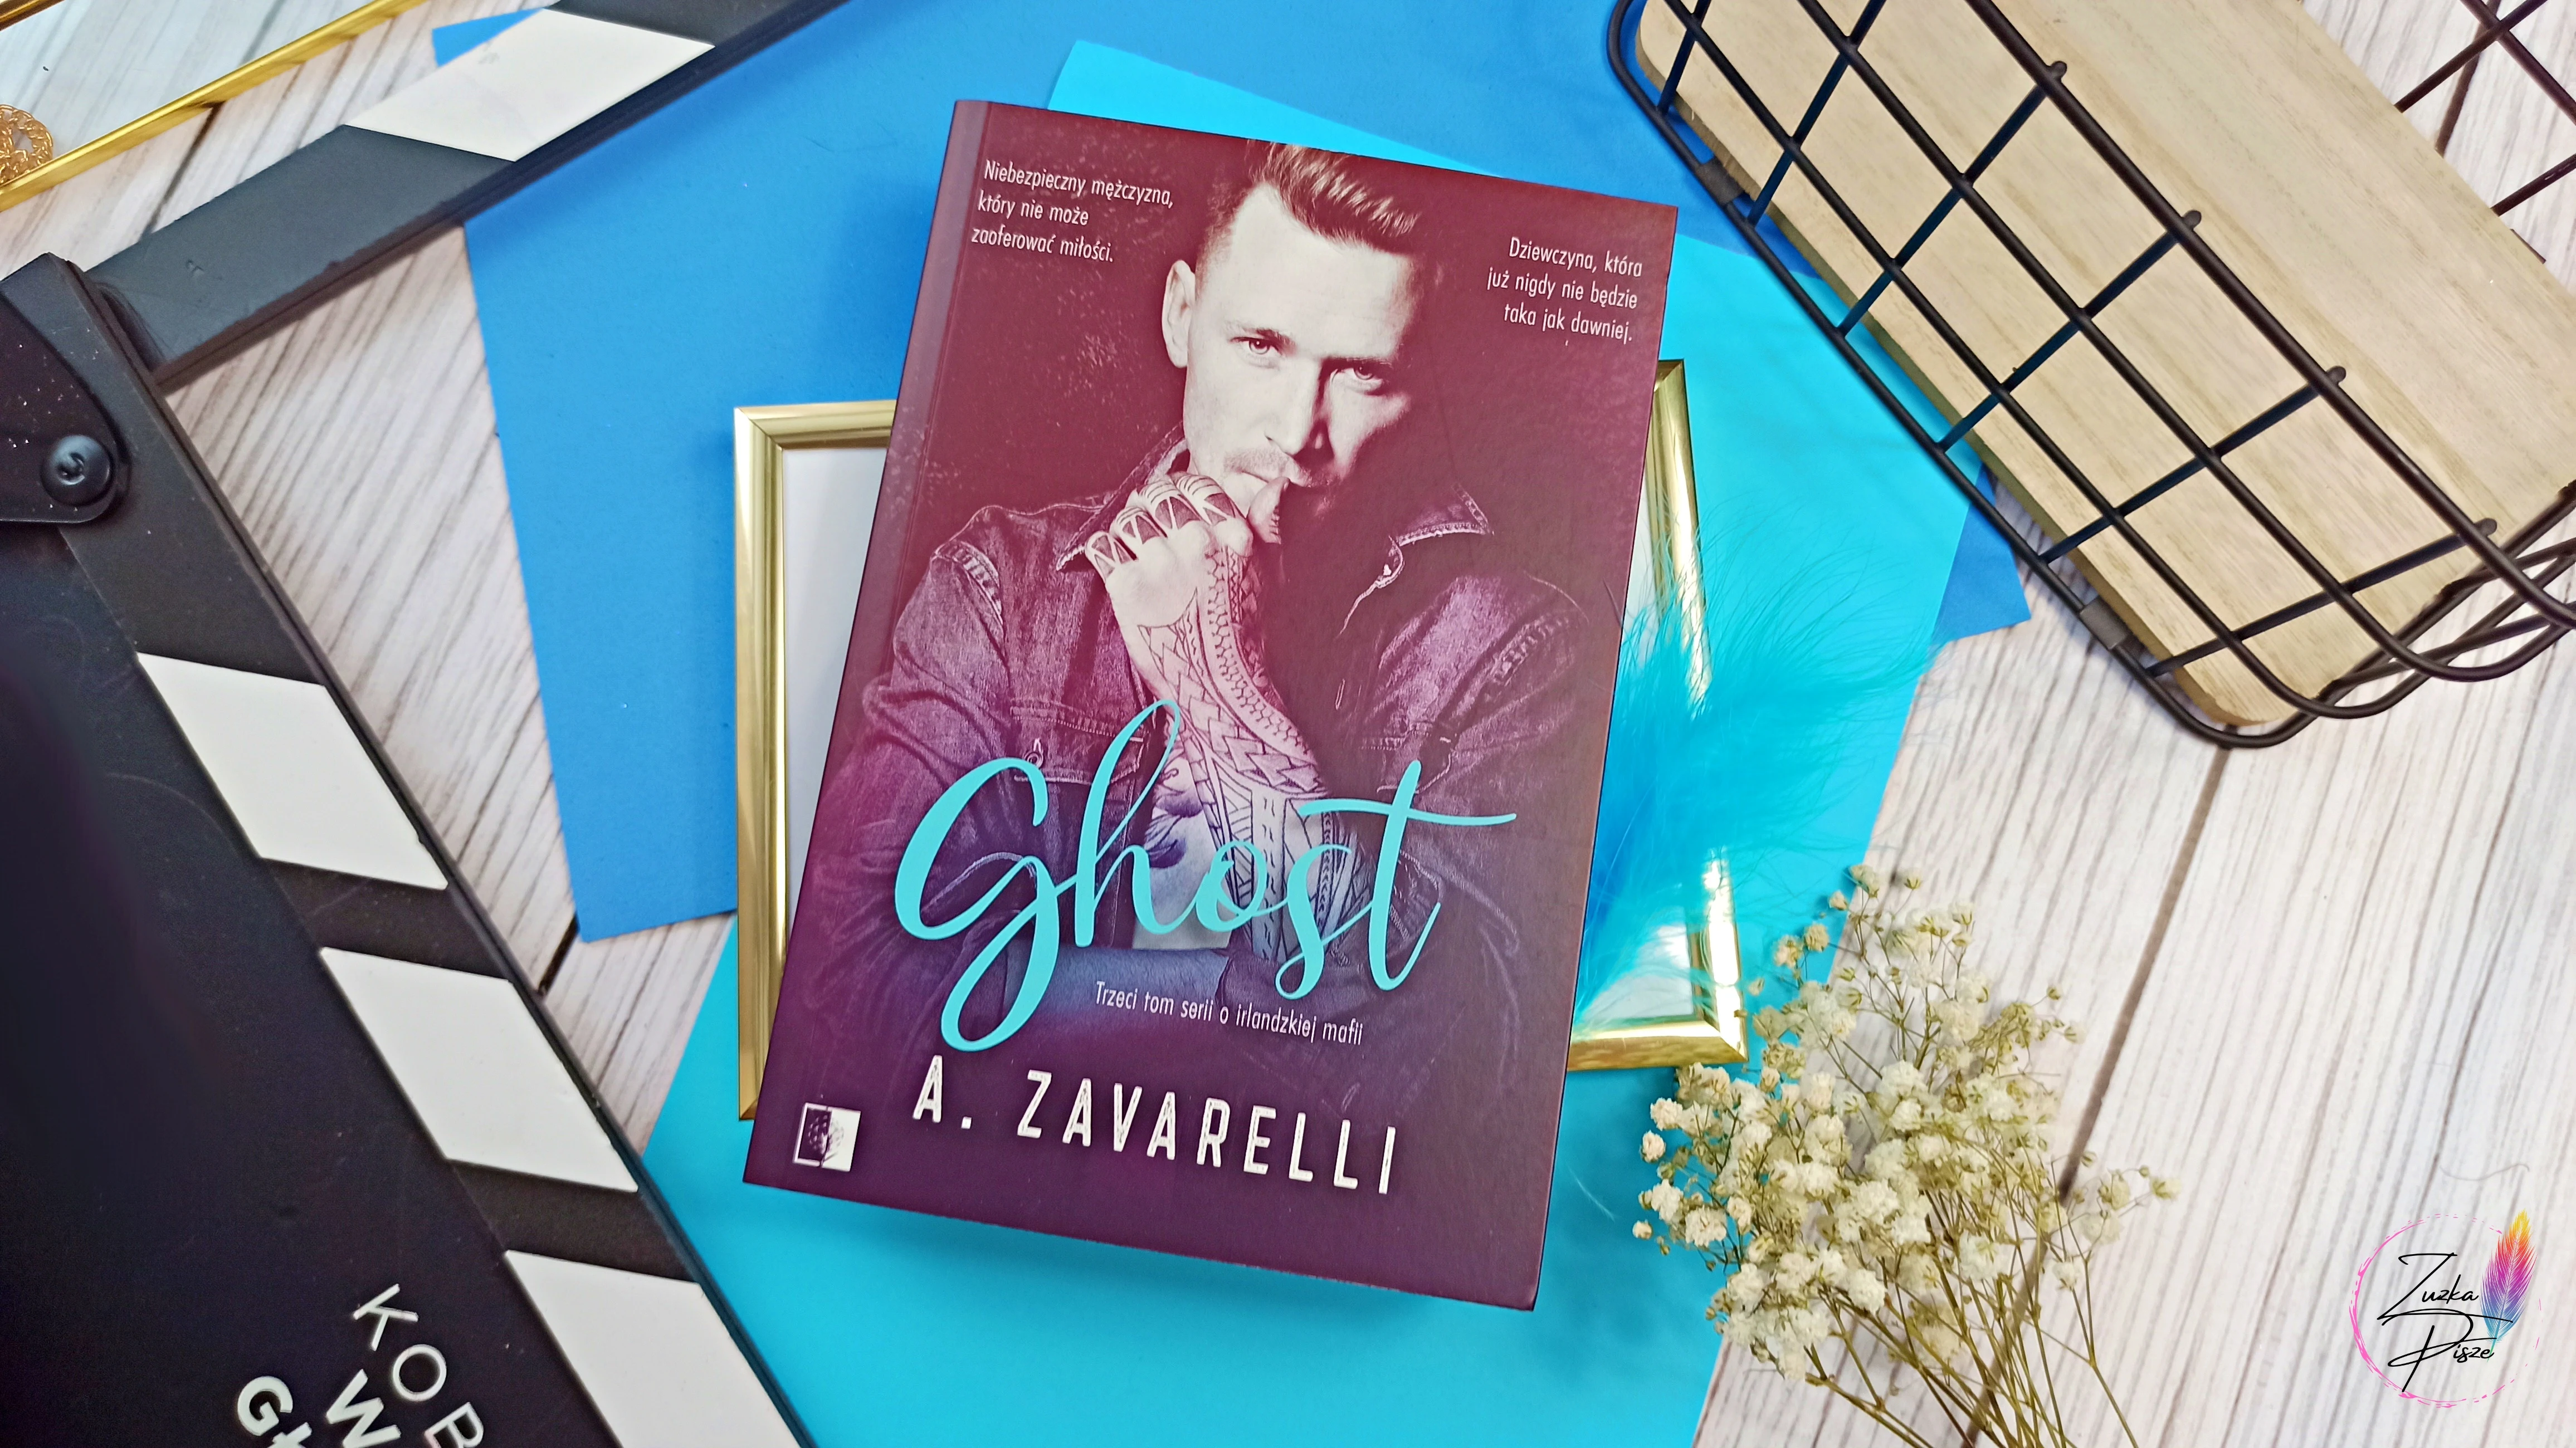 A. Zavarelli "Ghost" - patronacka recenzja książki